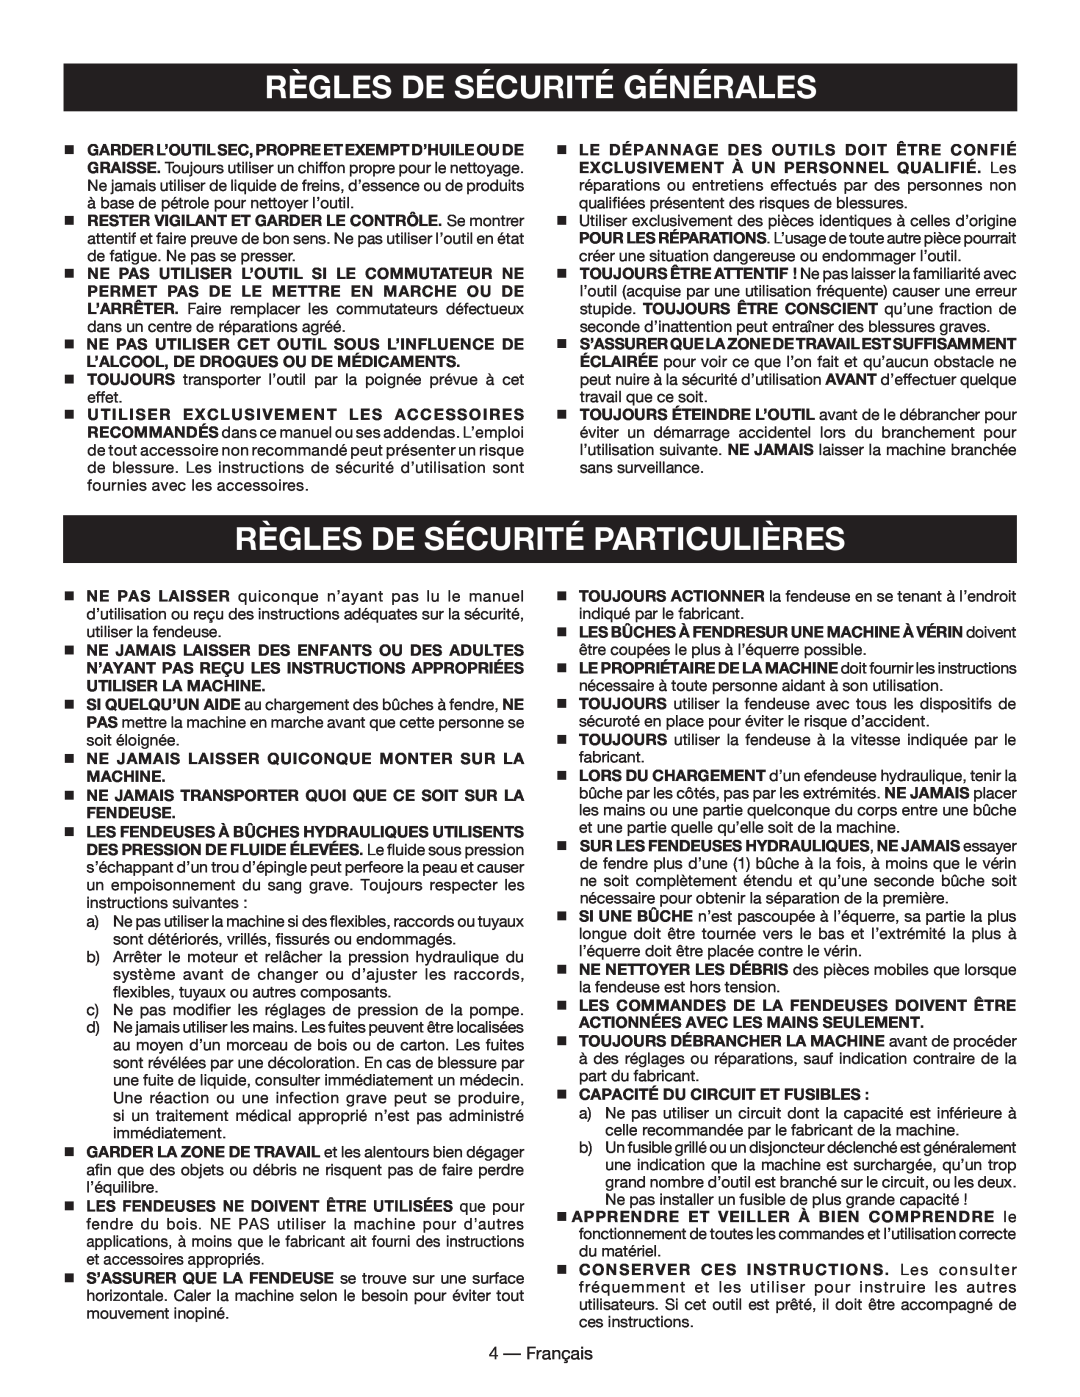 Homelite UT49102 manuel dutilisation Règles De Sécurité Particulières, Règles De Sécurité Générales, Français 